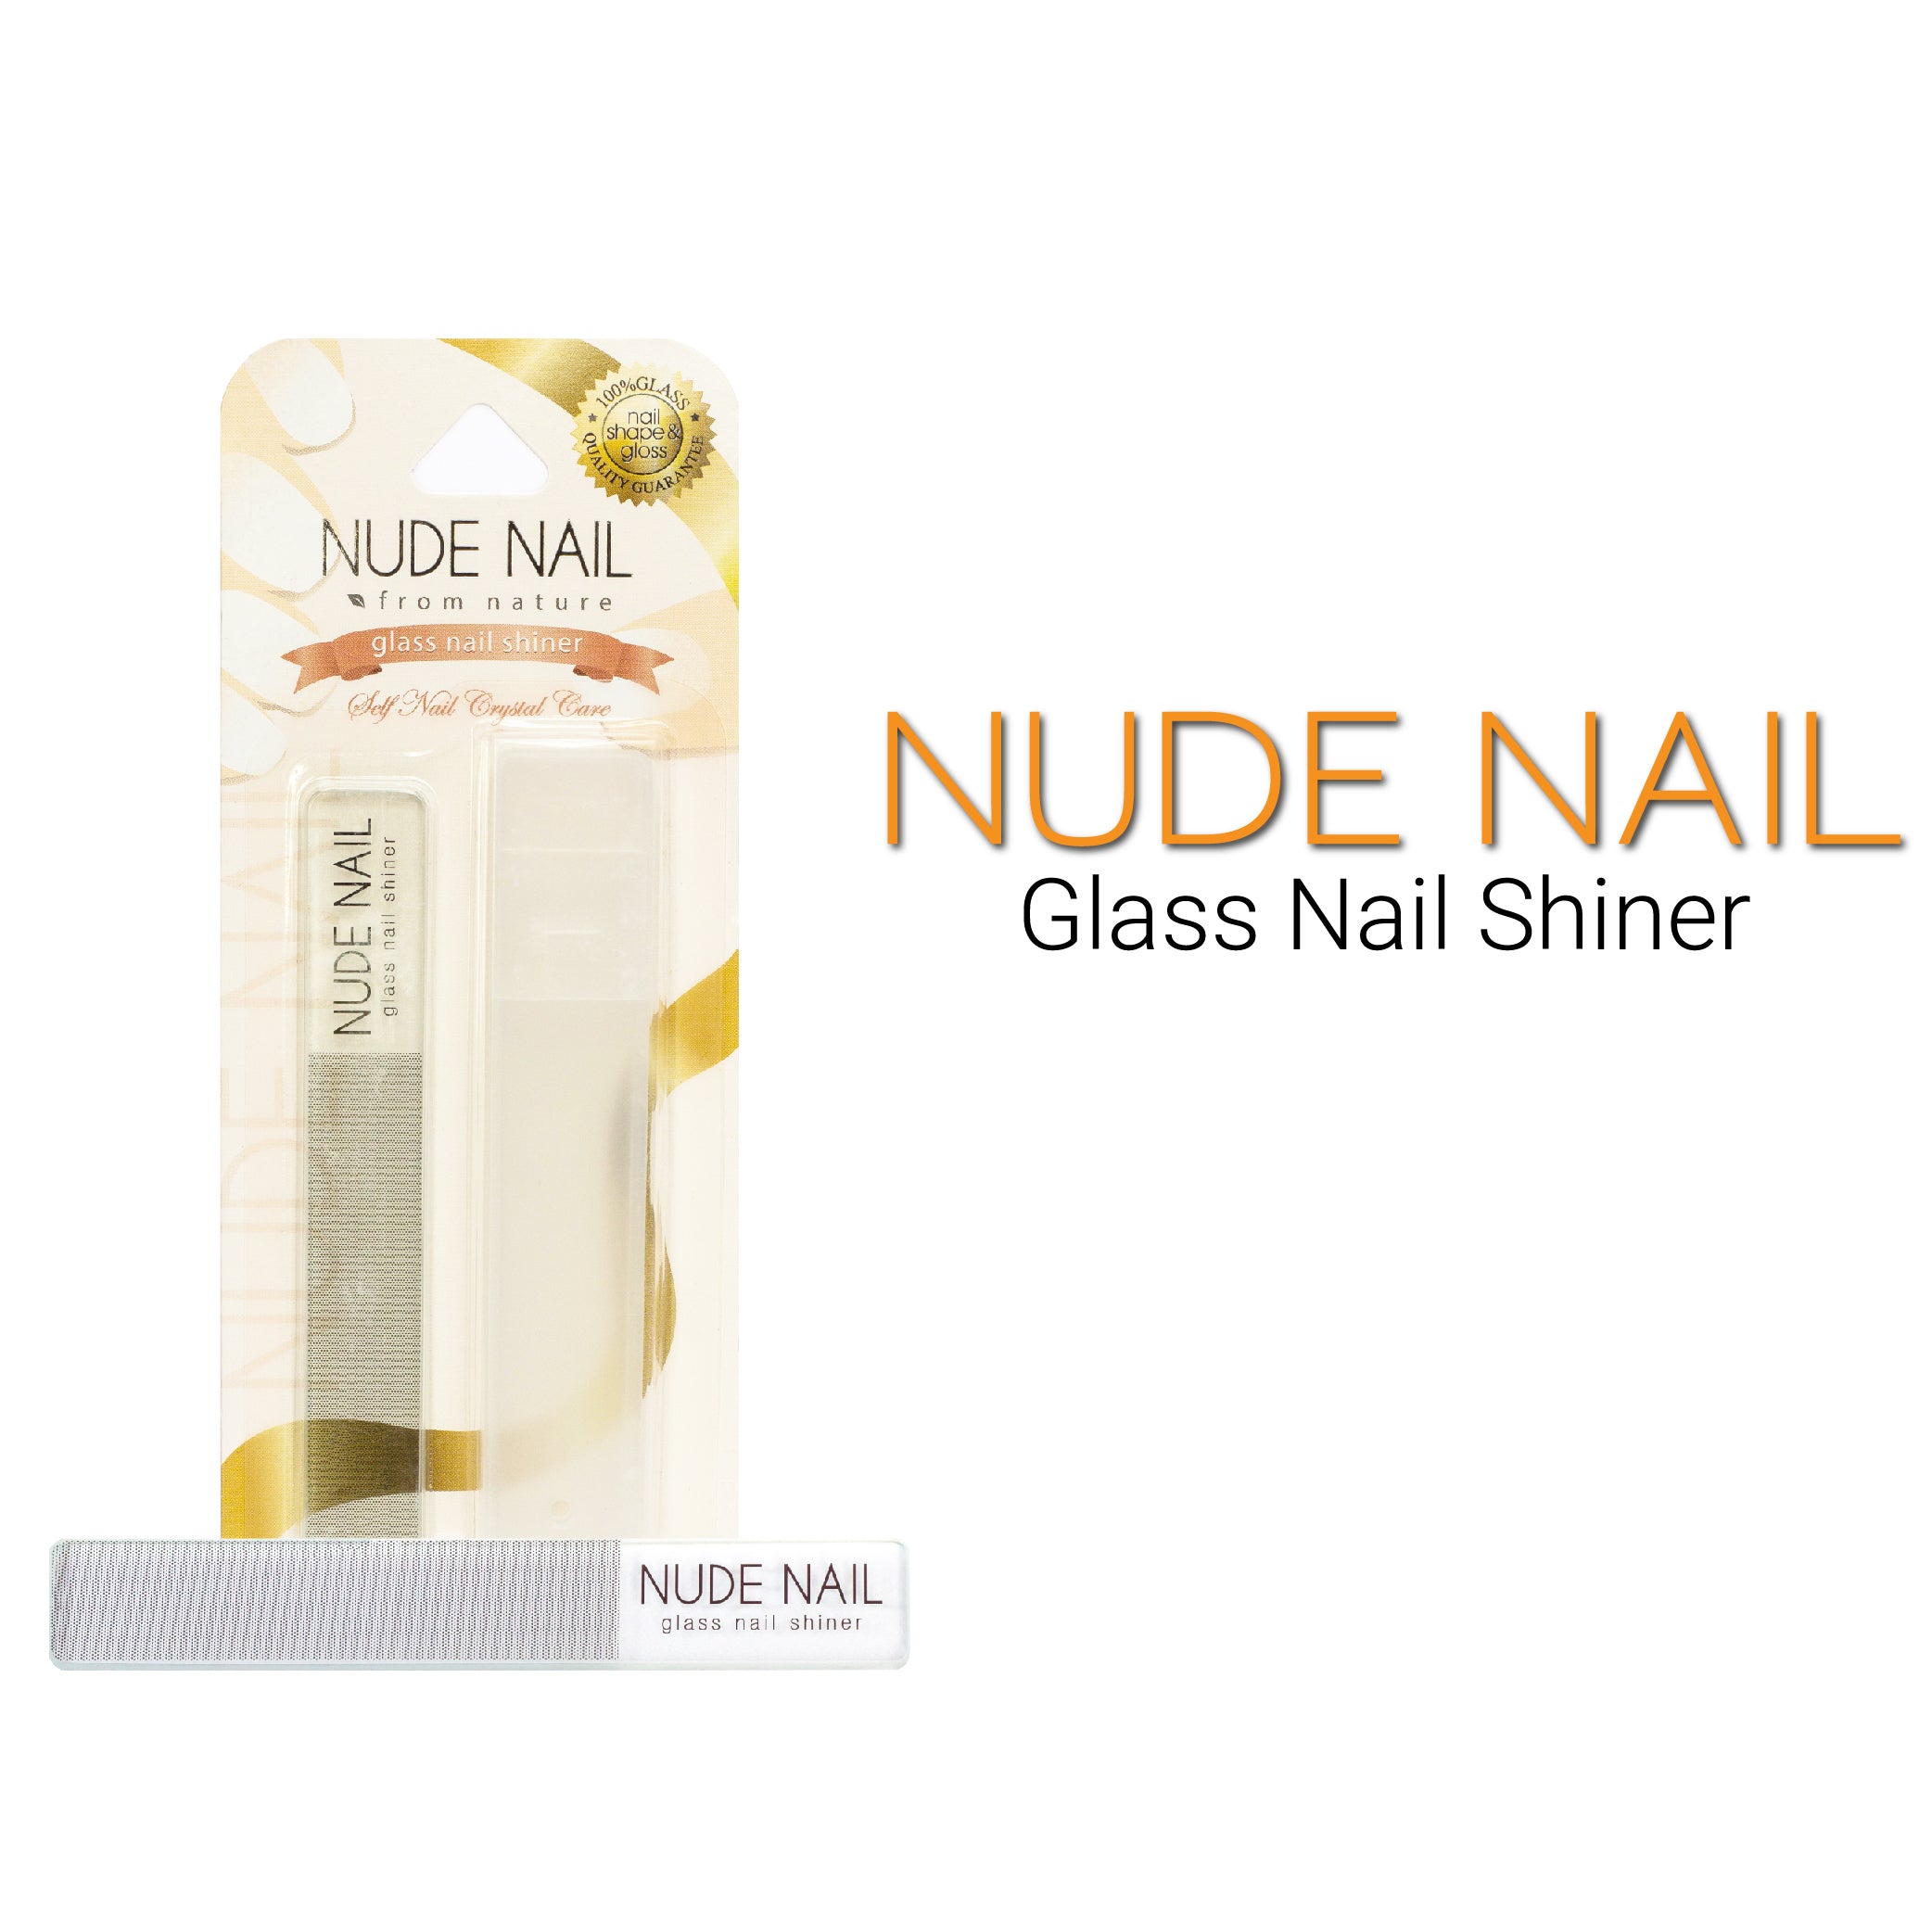 NUDE NAIL Glass Nail Shiner